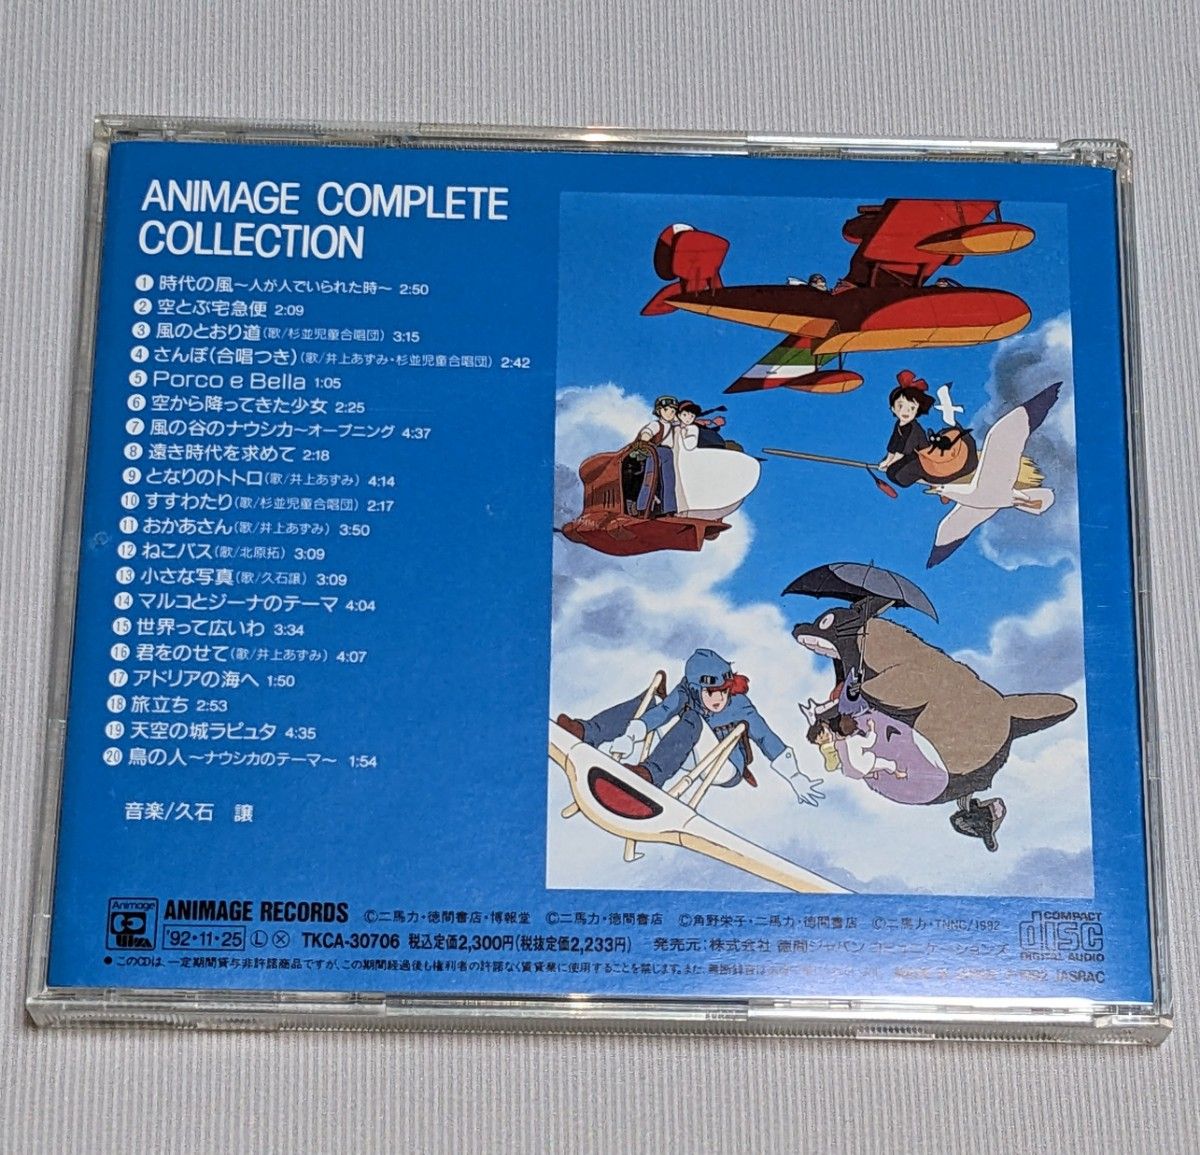 アニメージュ コンプリート コレクション 風の谷ナウシカ 紅の豚 CD 帯付